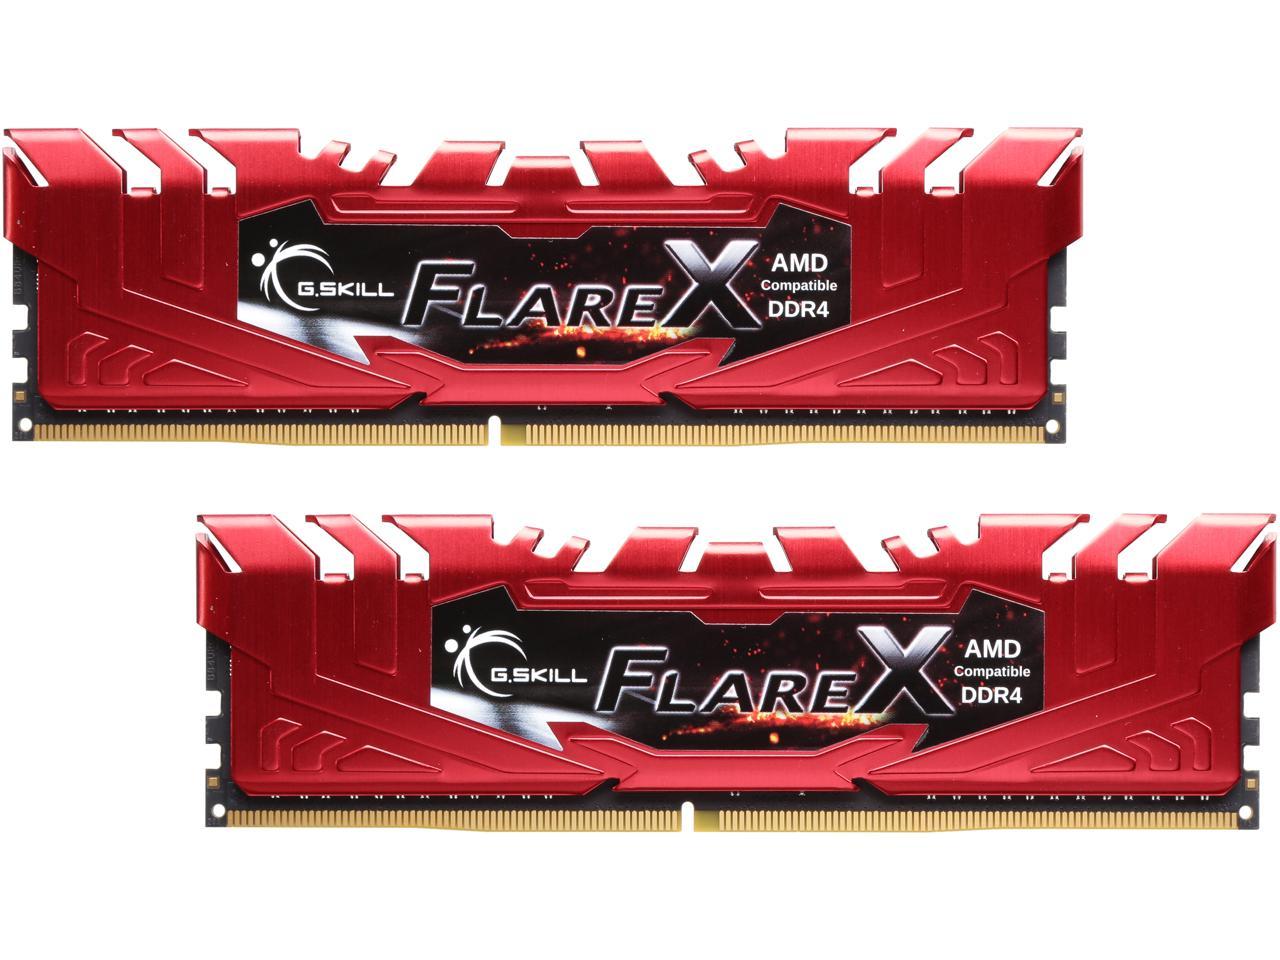 G.SKILL Flare X Series 16GB (2 x 8GB) 288-Pin DDR4 SDRAM DDR4 2400 (PC4 19200) AMD X370 / B350 / A320 Memory (Desktop Memory) Model F4-2400C16D-16GFXR